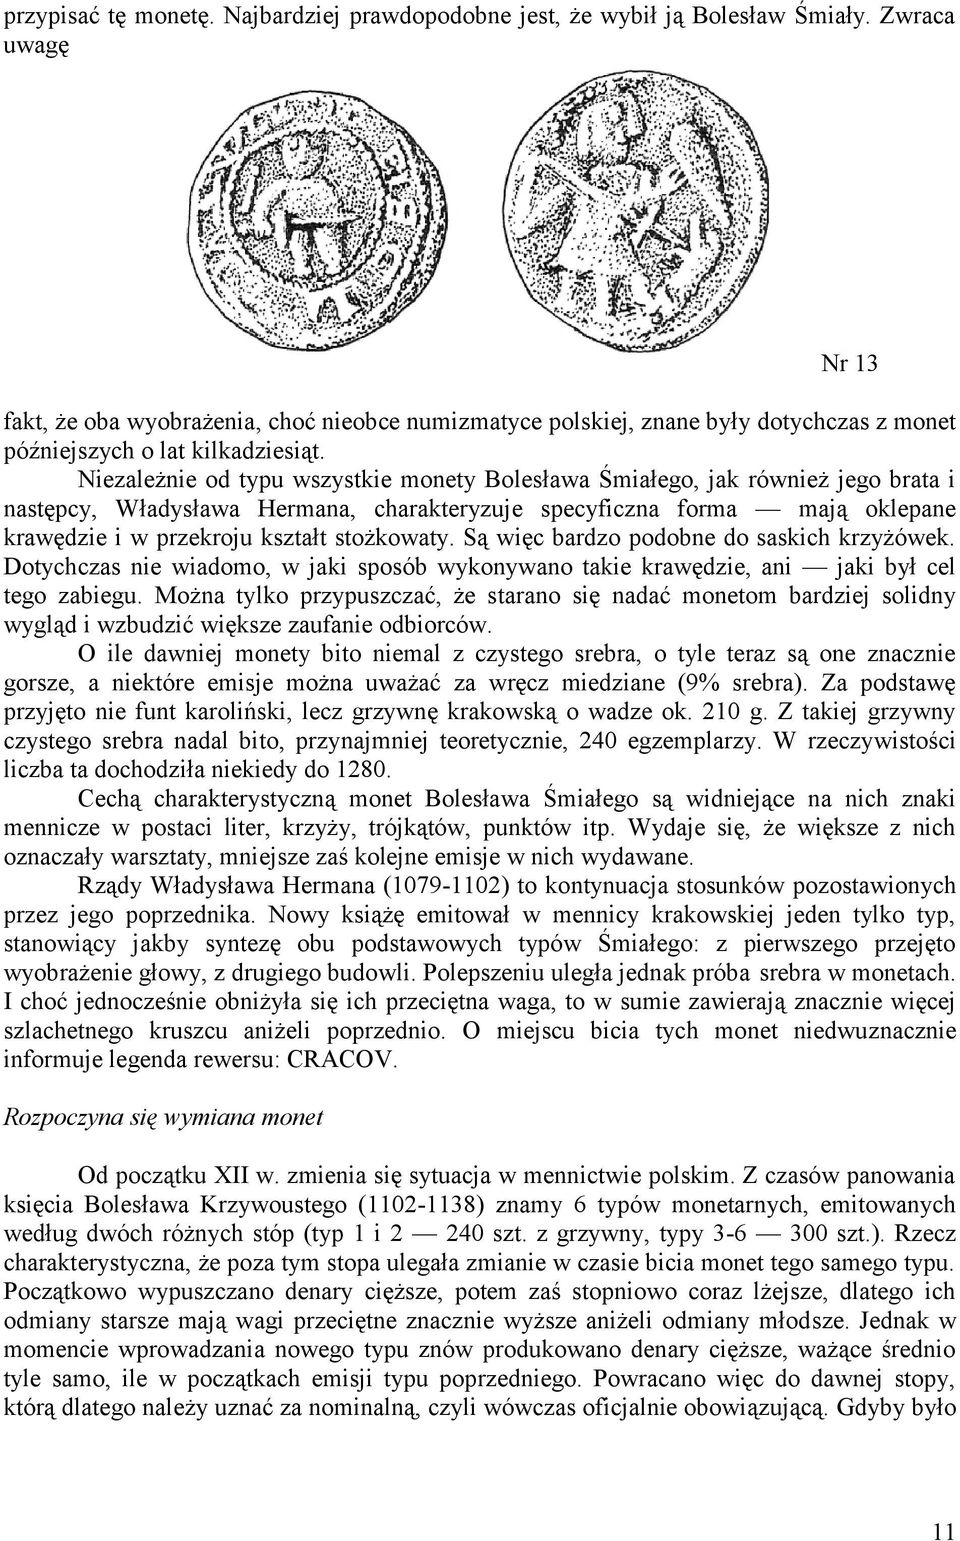 Niezależnie od typu wszystkie monety Bolesława Śmiałego, jak również jego brata i następcy, Władysława Hermana, charakteryzuje specyficzna forma mają oklepane krawędzie i w przekroju kształt